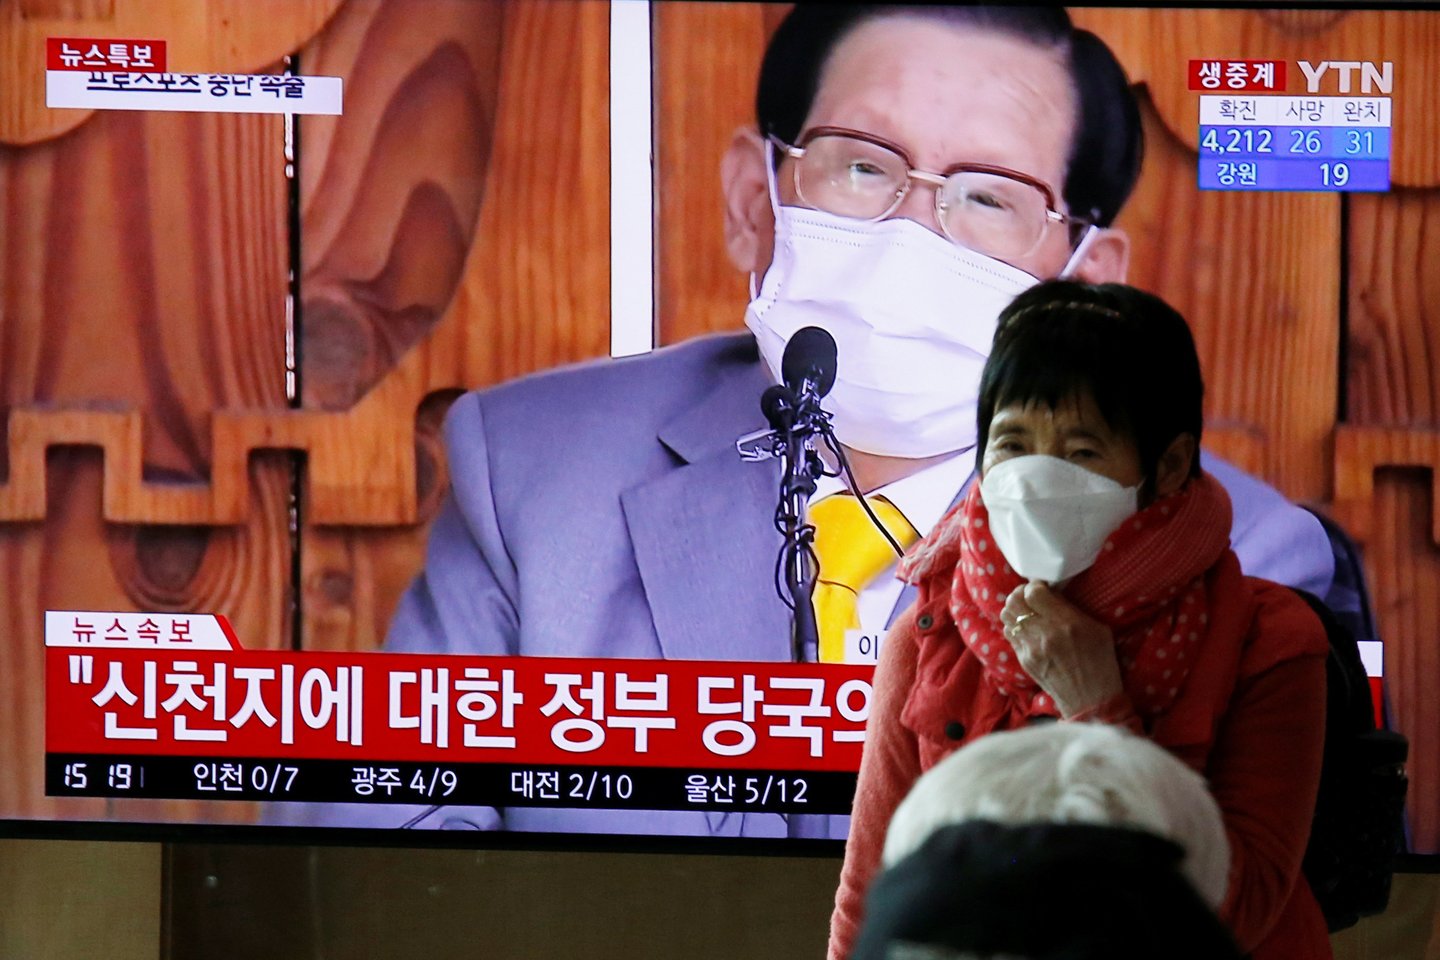  Pietų Korėjos sektos, su kuria siejama daugiau nei pusė iš visų šalyje nustatytų beveik 4 000 užsikrėtimo naujuoju koronavirusu atvejų, lyderis pirmadienį atsiprašė dėl jo sukeliamos ligos plitimo.  <br> Reuters/Scanpix nuotr.